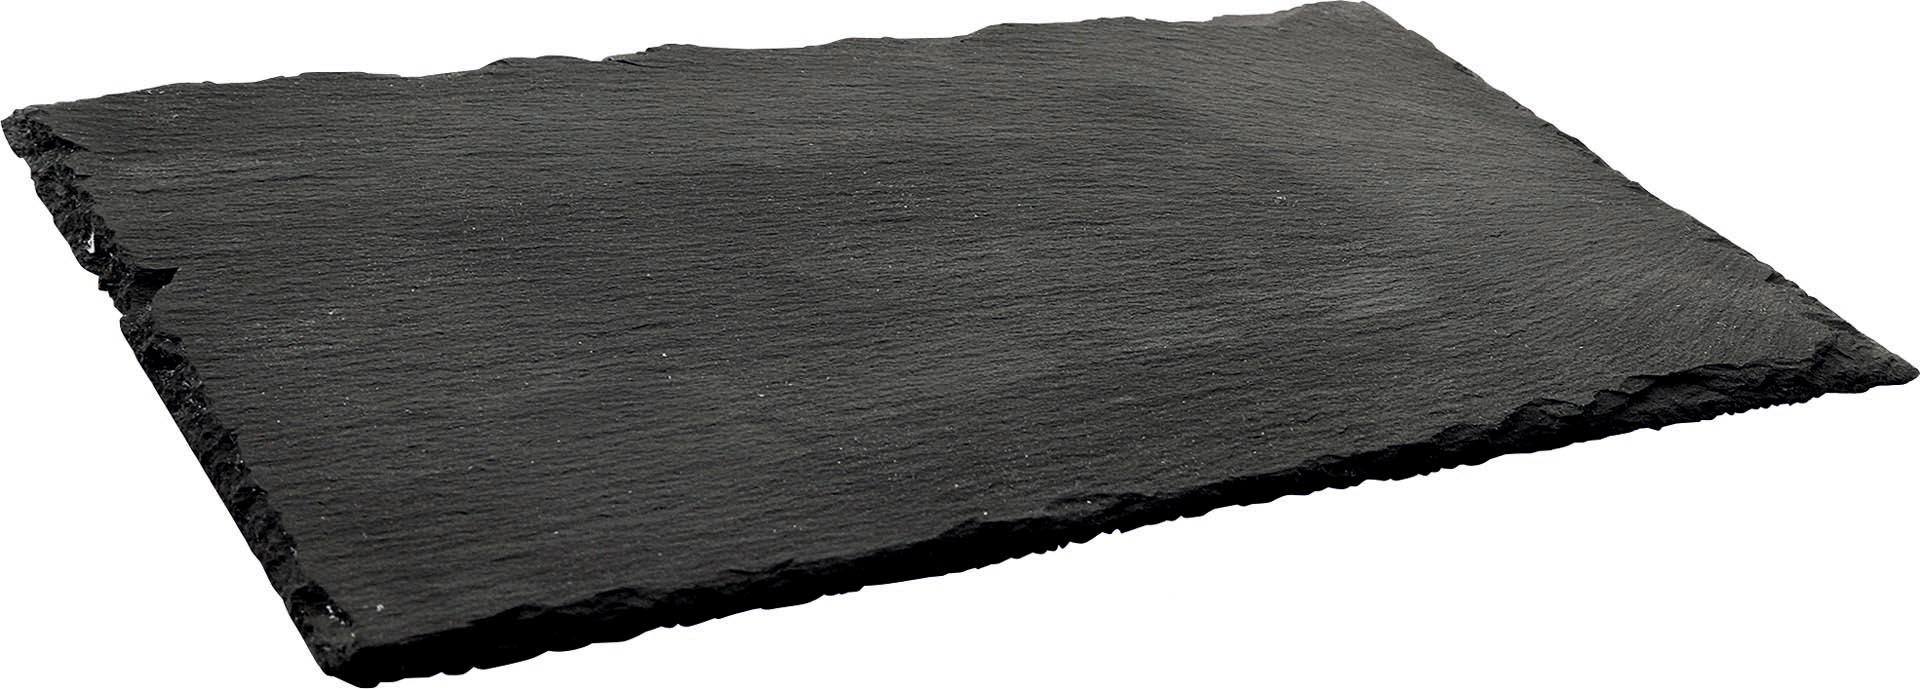 Naturschiefer-Buffetplatte rund 25 cm